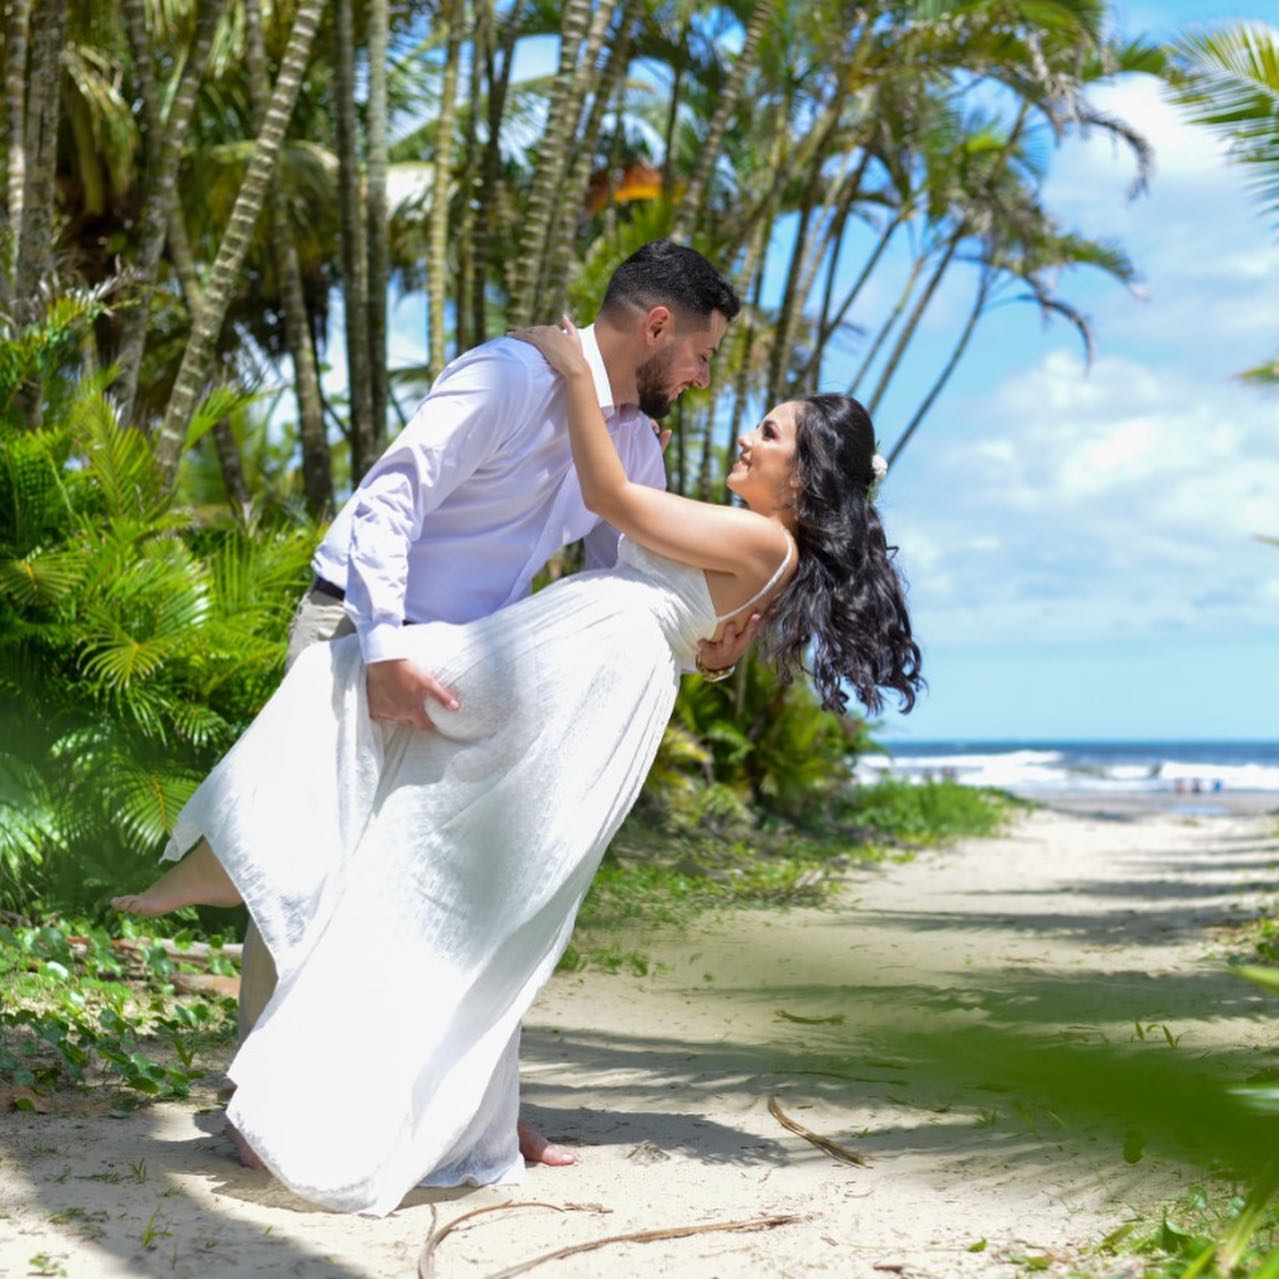 Bertioga tem cenários perfeitos para realizar o sonho de casar na praia